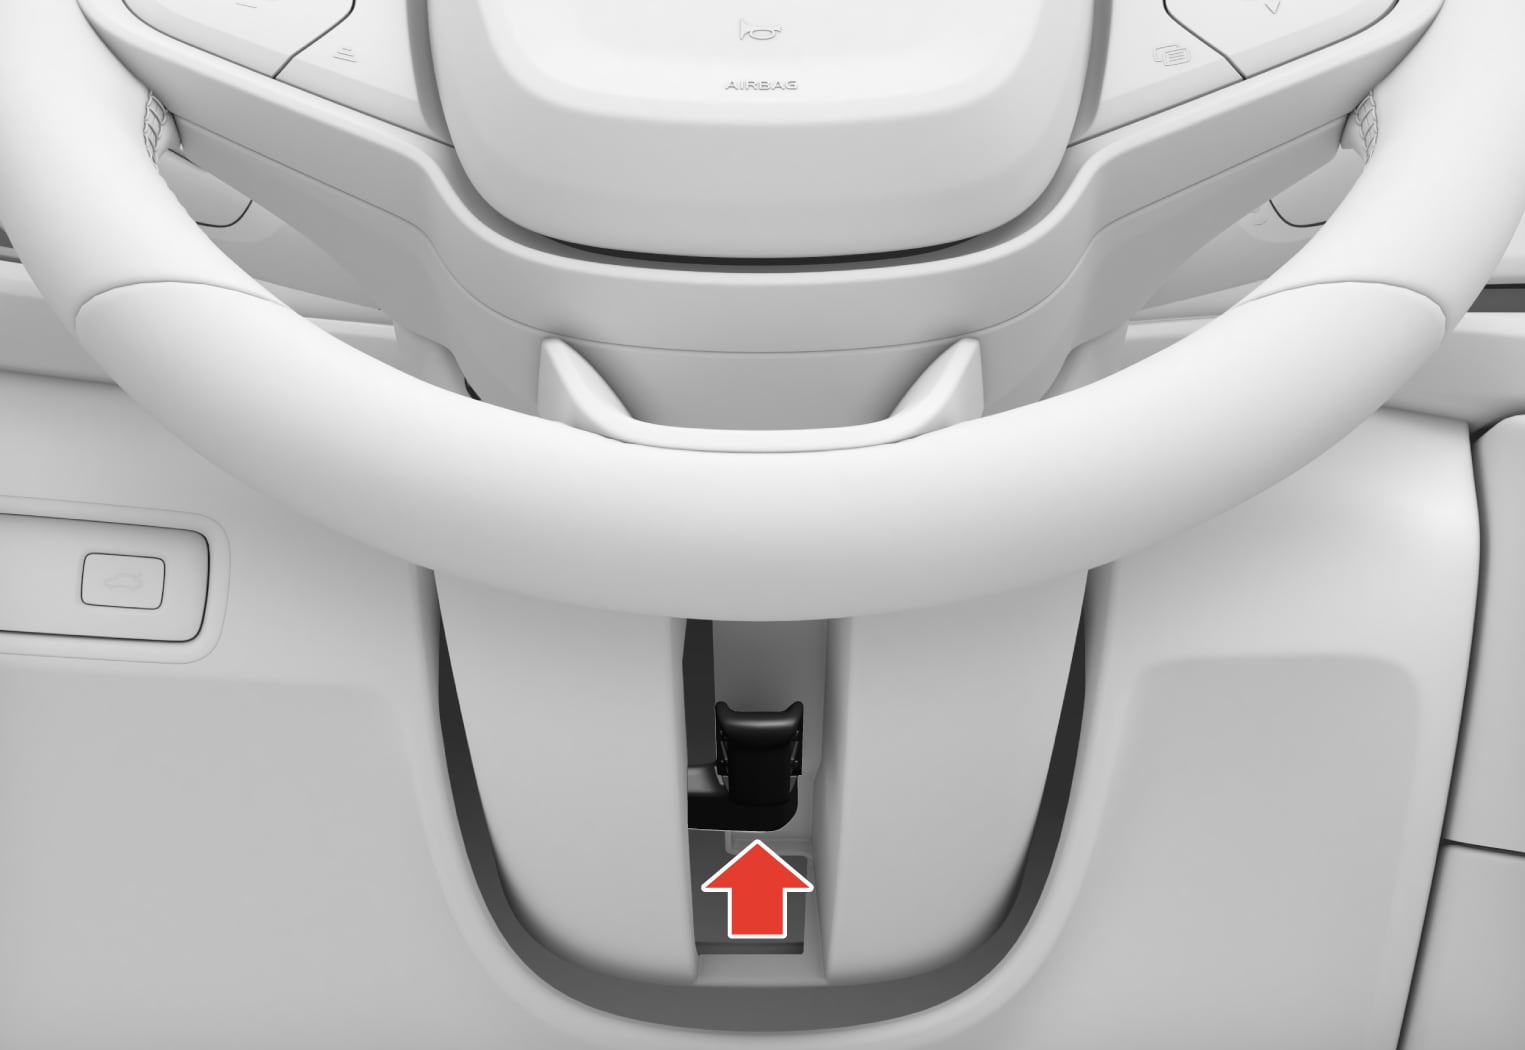 PS-2007-Adjusting steering wheel with knee airbag